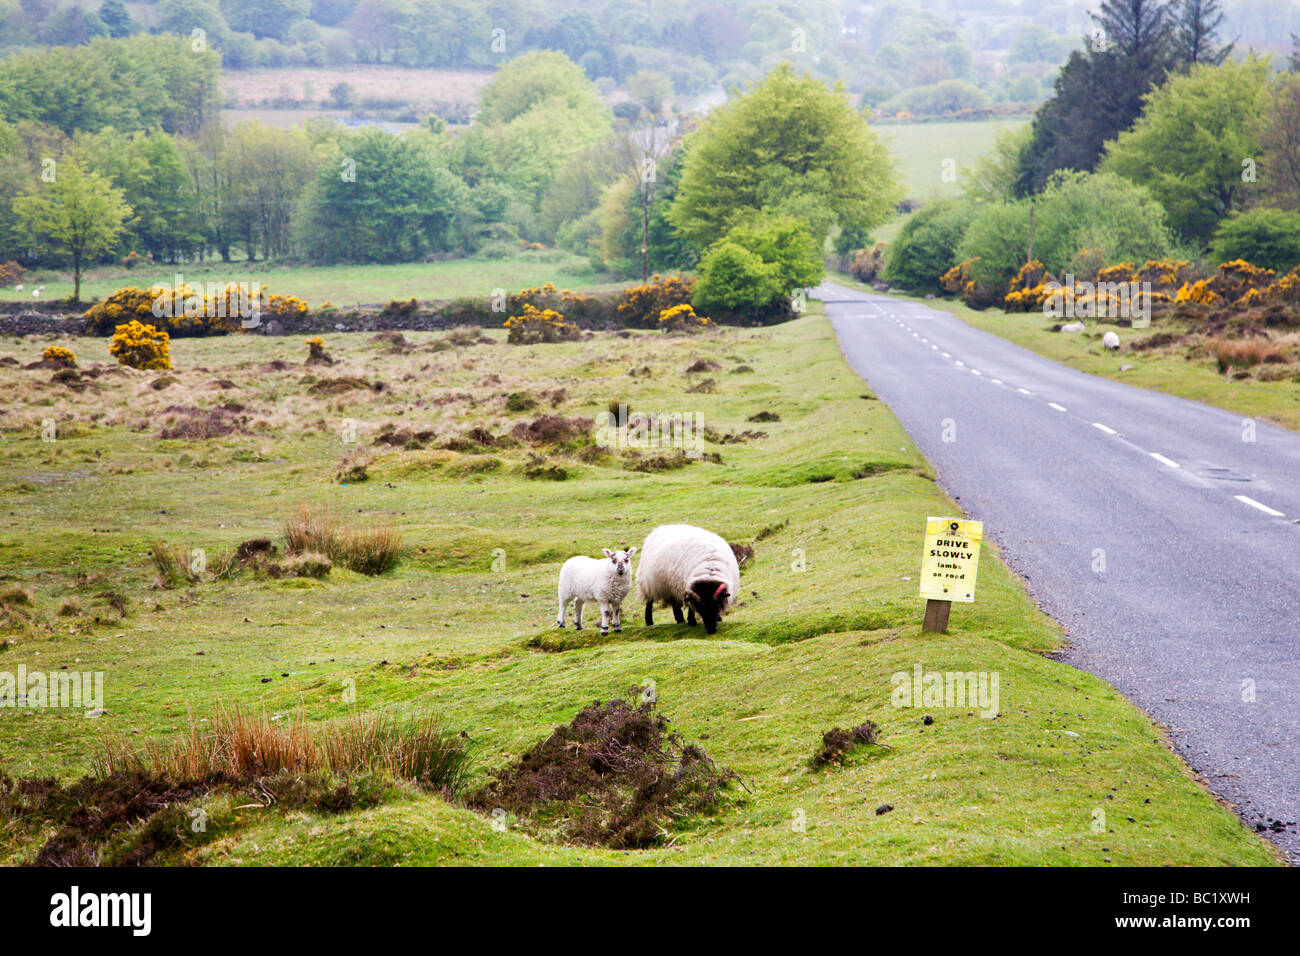 Brebis et Agneau près de conduire lentement agneaux on road sign Dartmoor Engla Banque D'Images